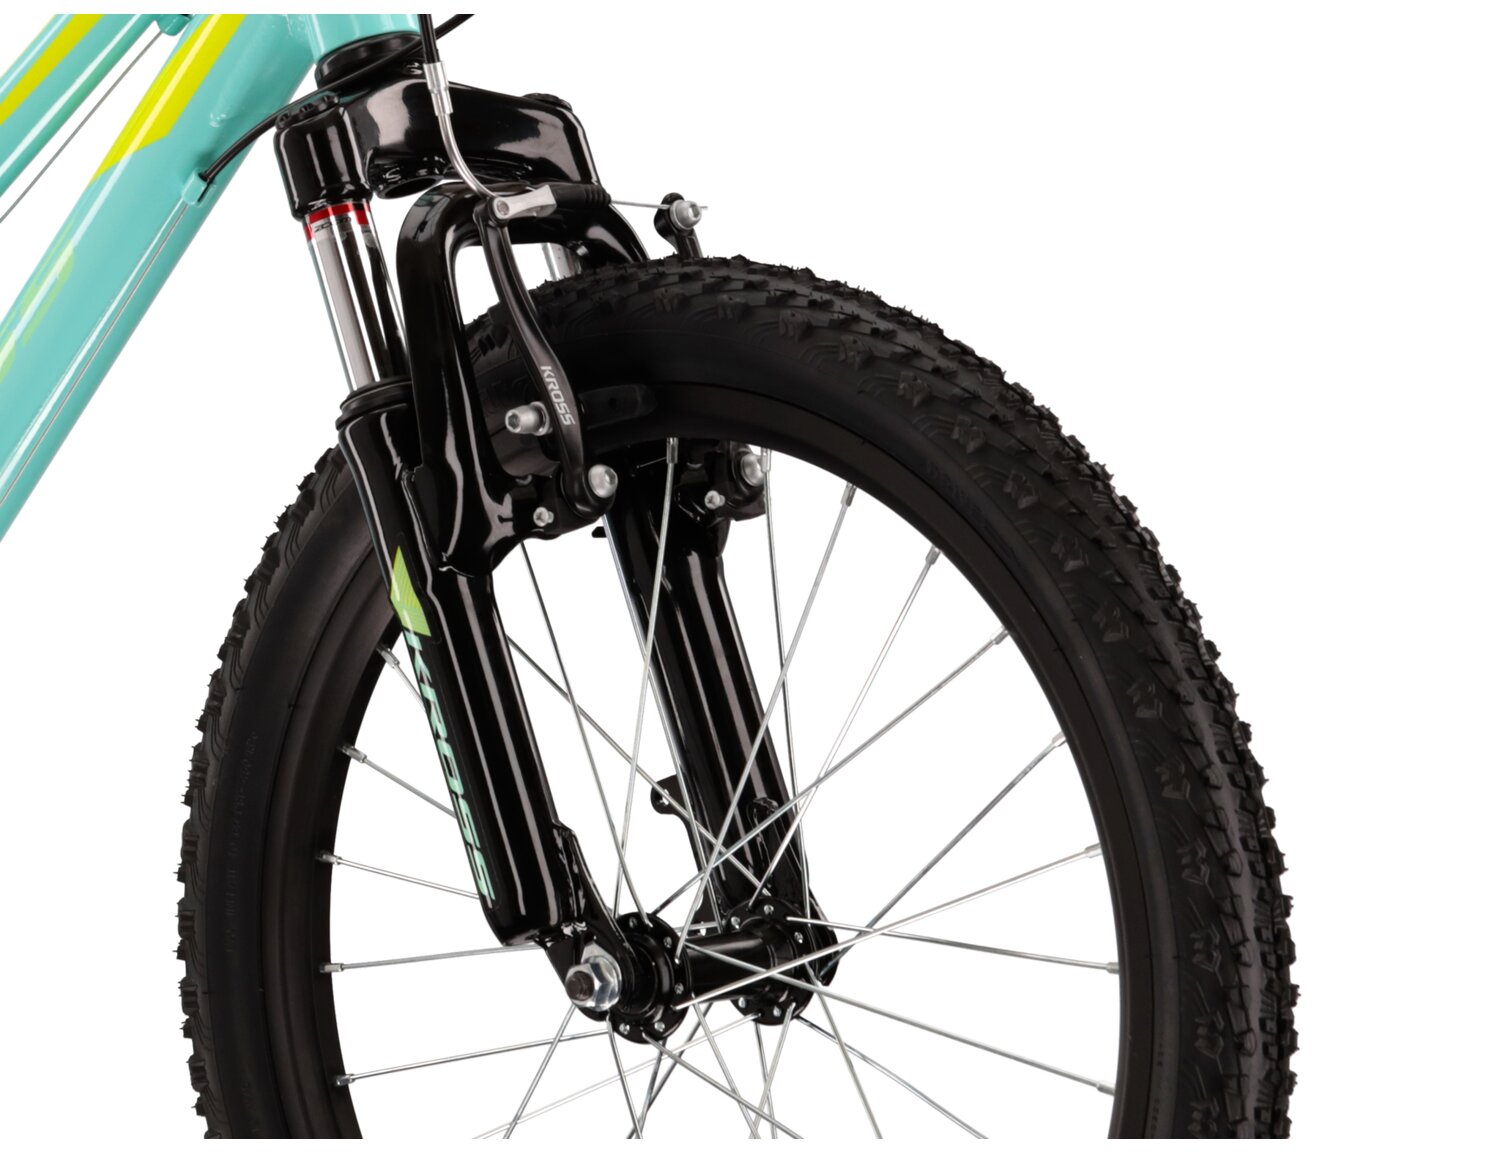  Aluminiowa rama, amortyzowany widelec o skoku 40mm oraz opony w rowerze dziecięcym KROSS Lea Mini 2.0 